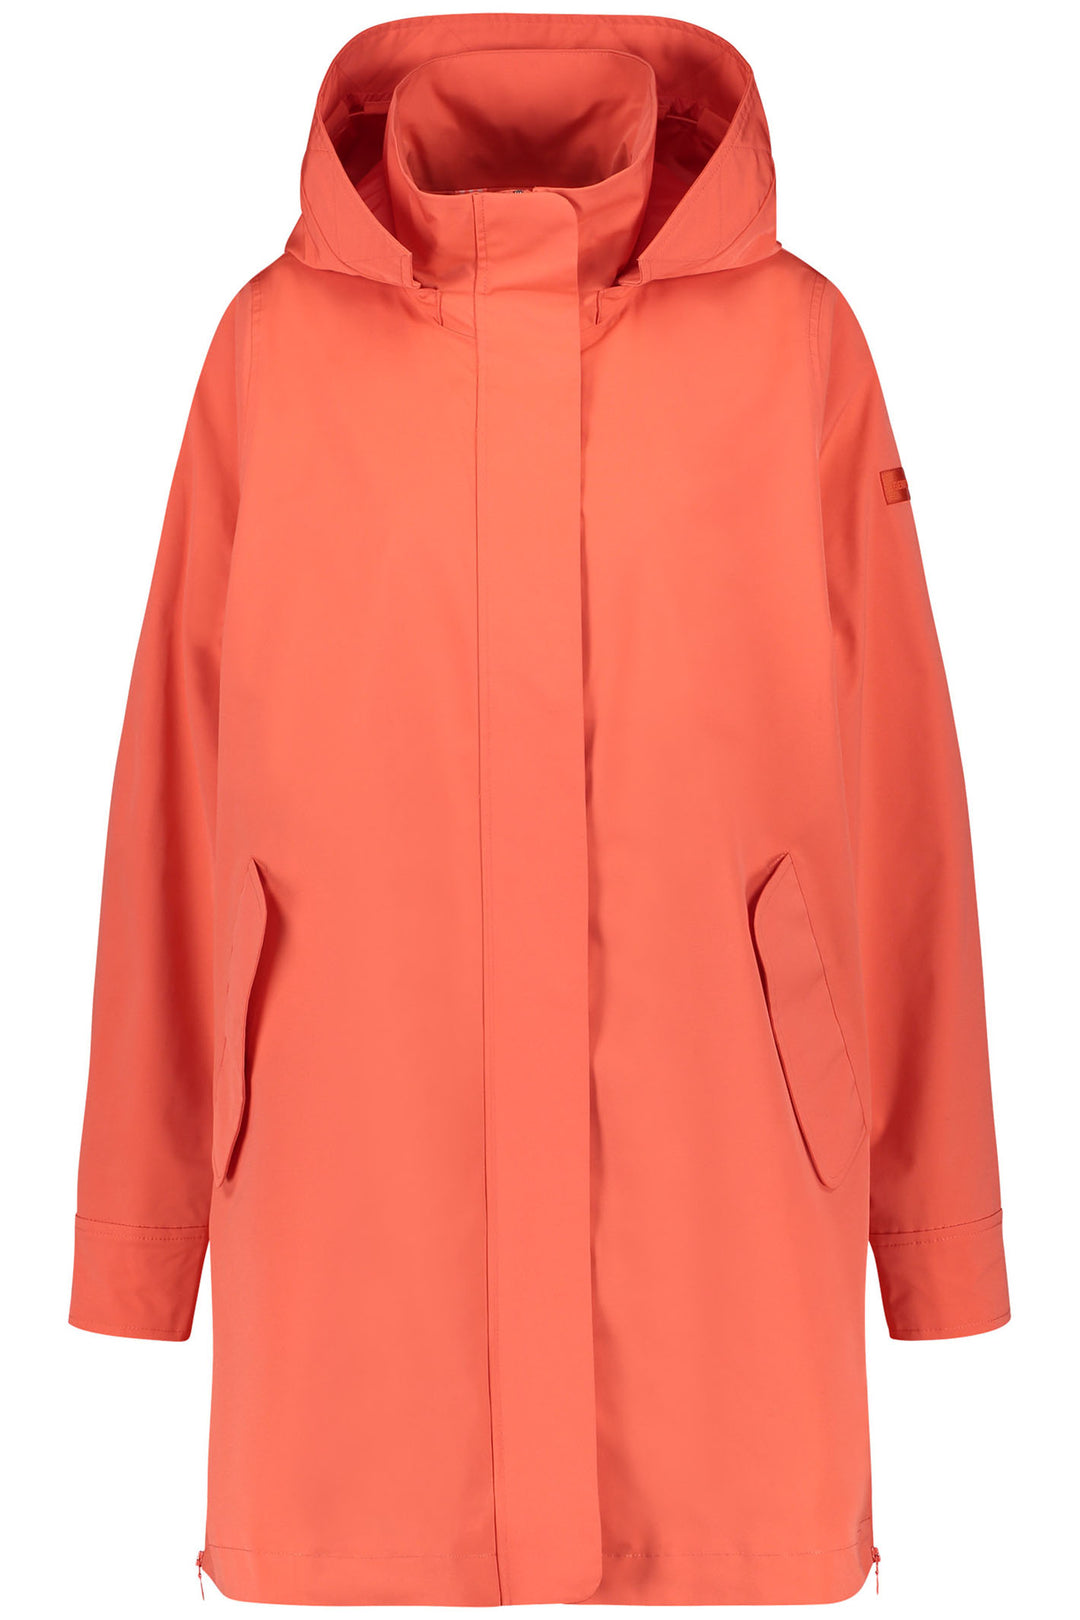 Gerry Weber 350203 60394 Hibiscus Orange Waterproof Rain Coat - Experience Boutique